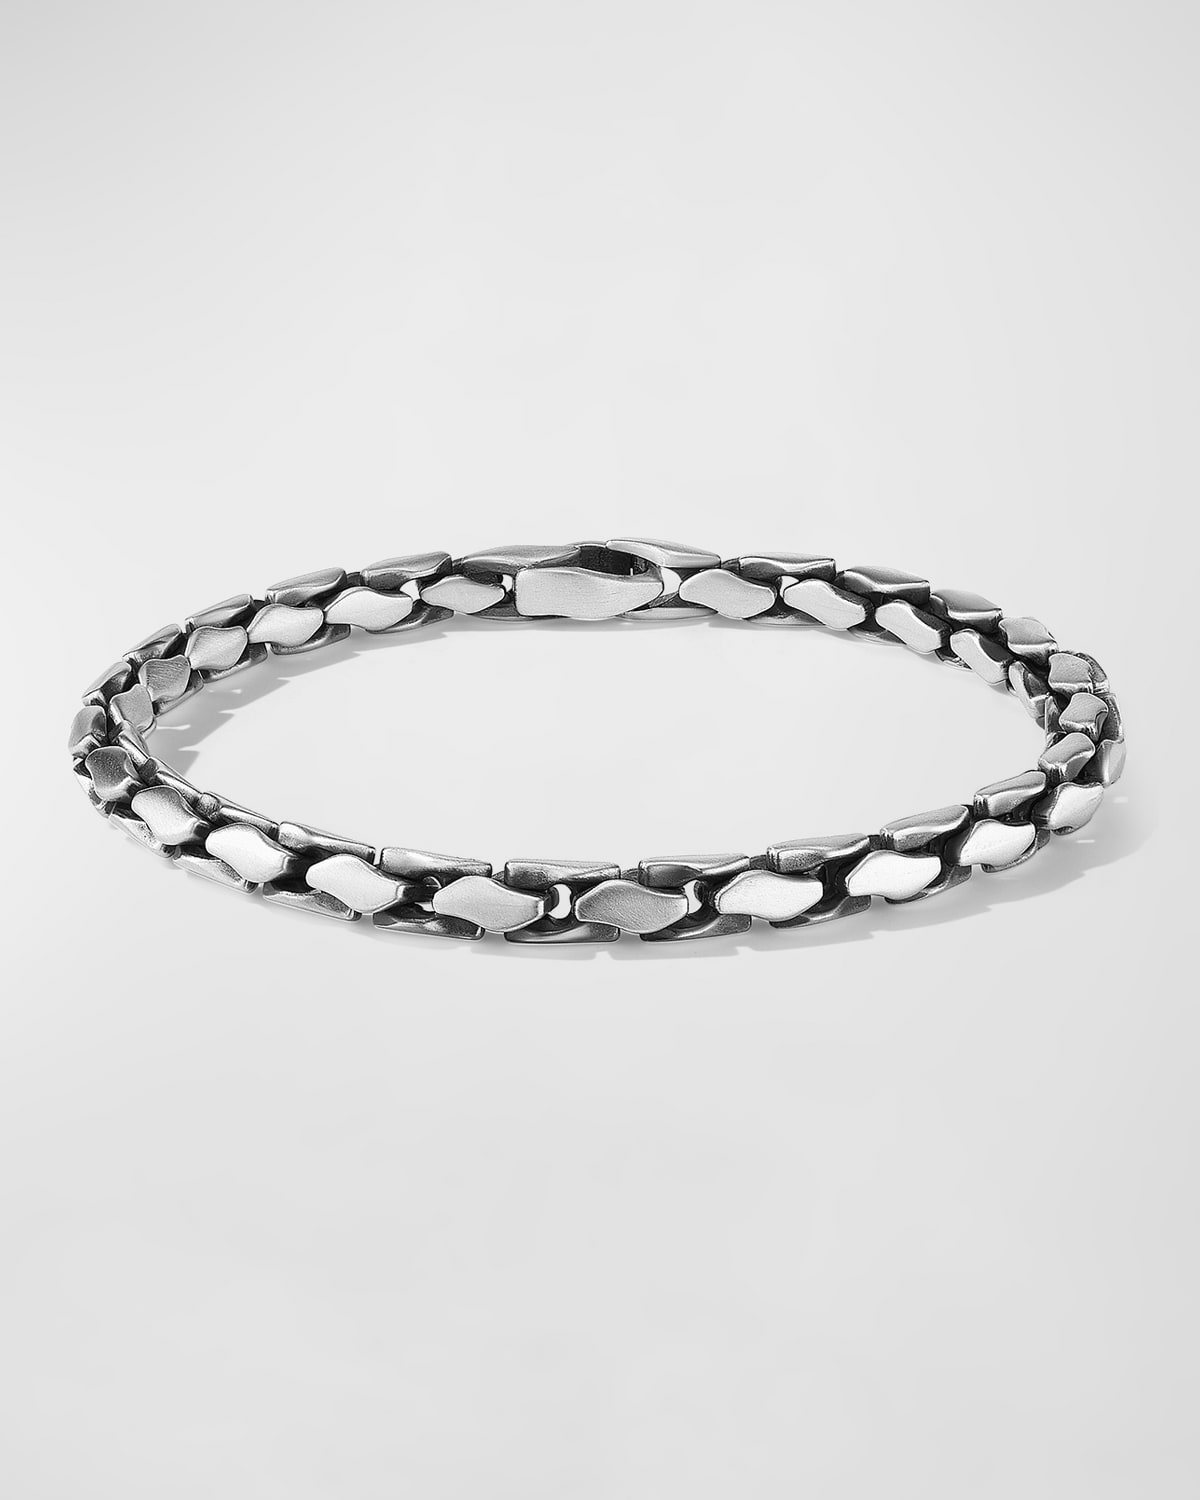 David Yurman Men's Fluted Chain Bracelet In Sterling Silver, 5mm, 6"l